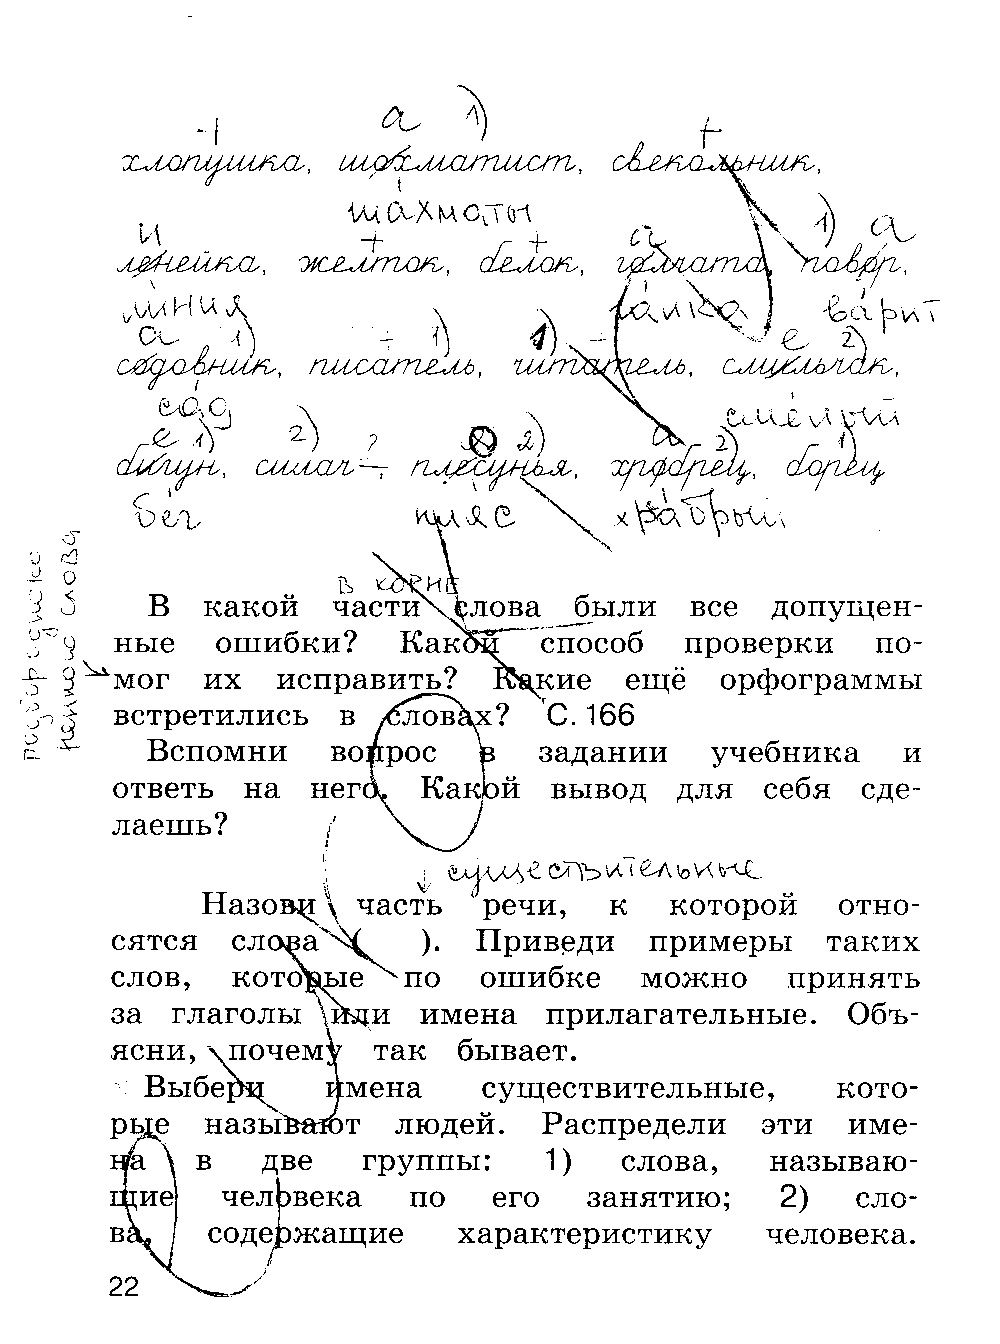 ГДЗ Русский язык 4 класс - стр. 22